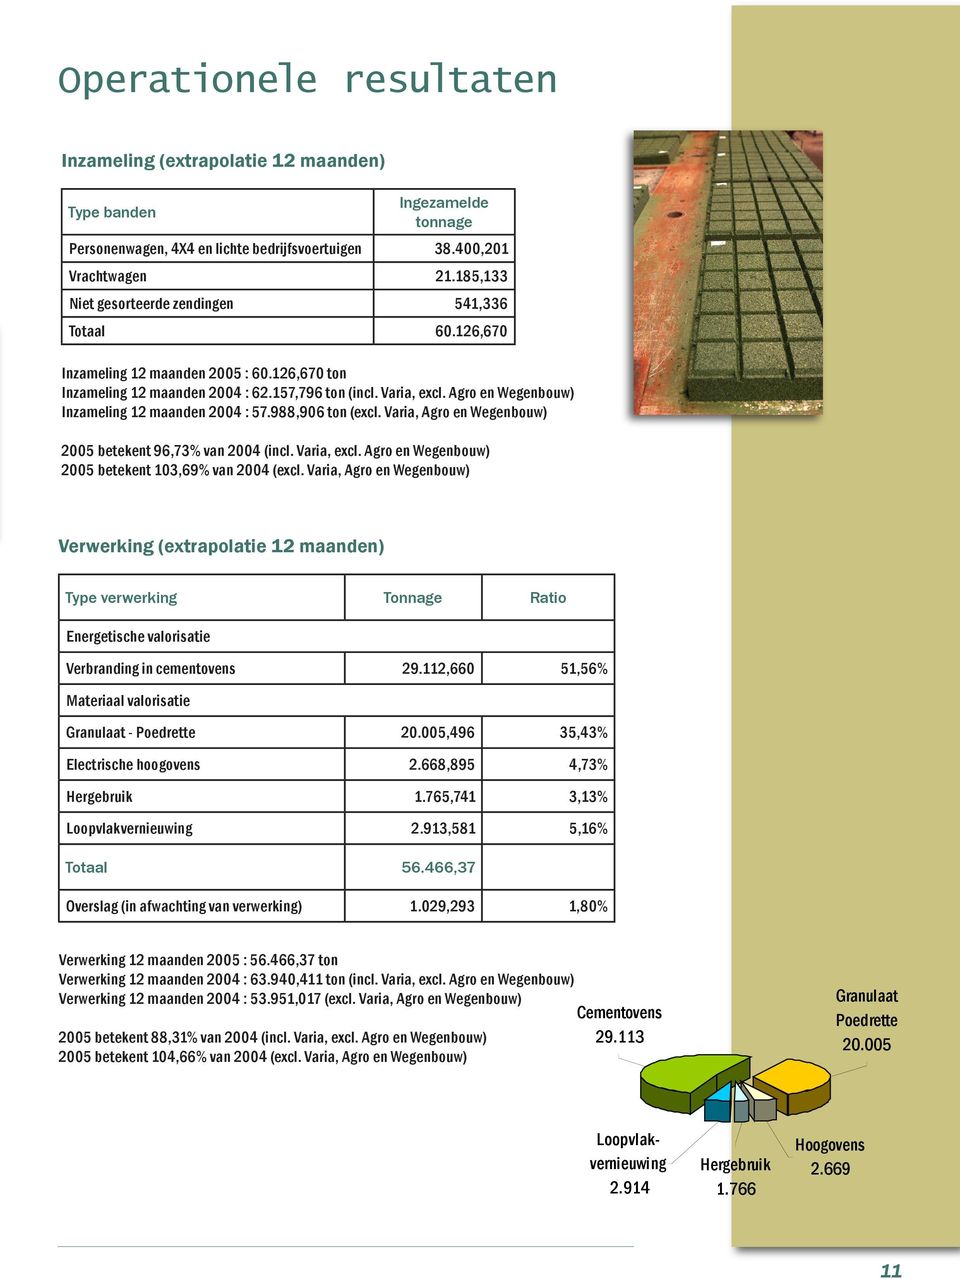 Agro en Wegenbouw) Inzameling 12 maanden 2004 : 57.988,906 ton (excl. Varia, Agro en Wegenbouw) 2005 betekent 96,73% van 2004 (incl. Varia, excl.